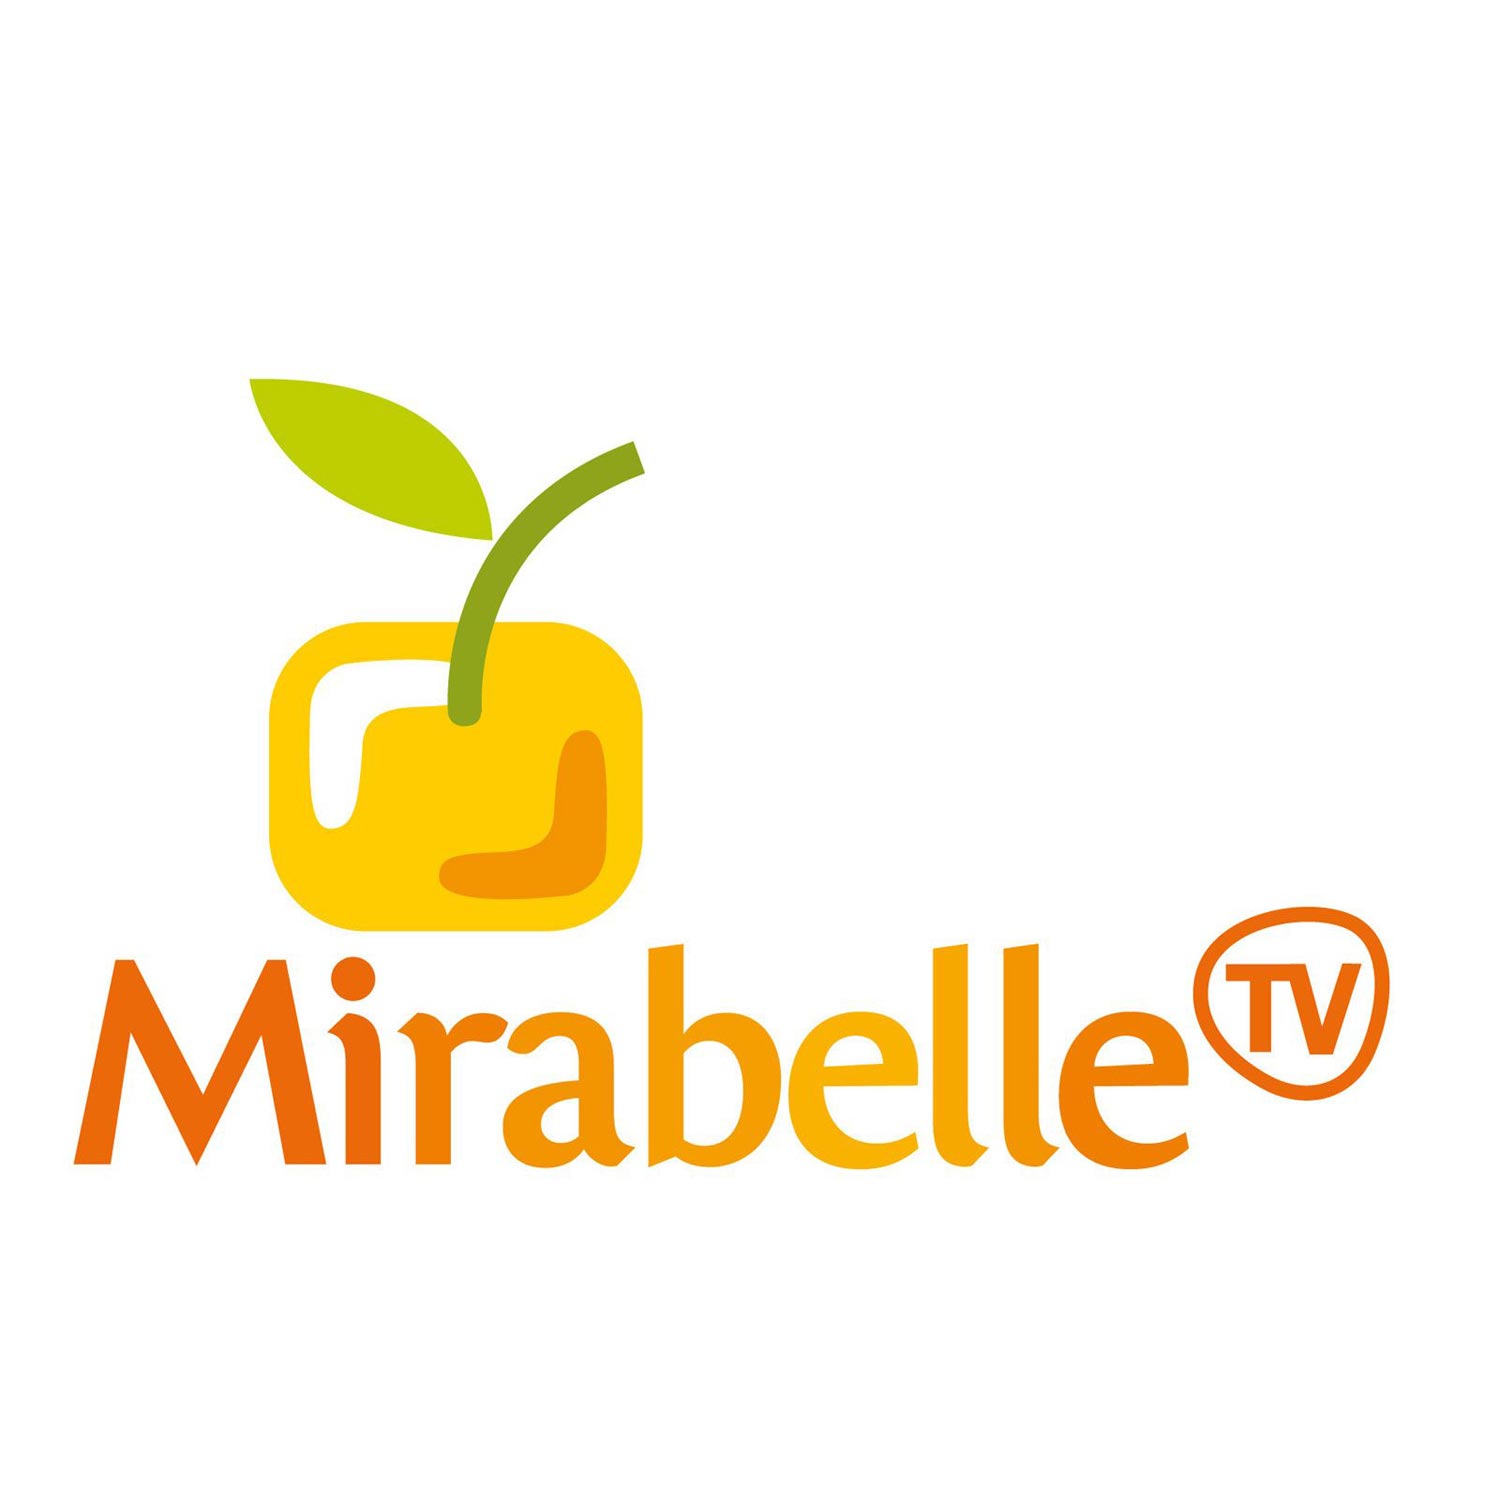 Mirabelle TV